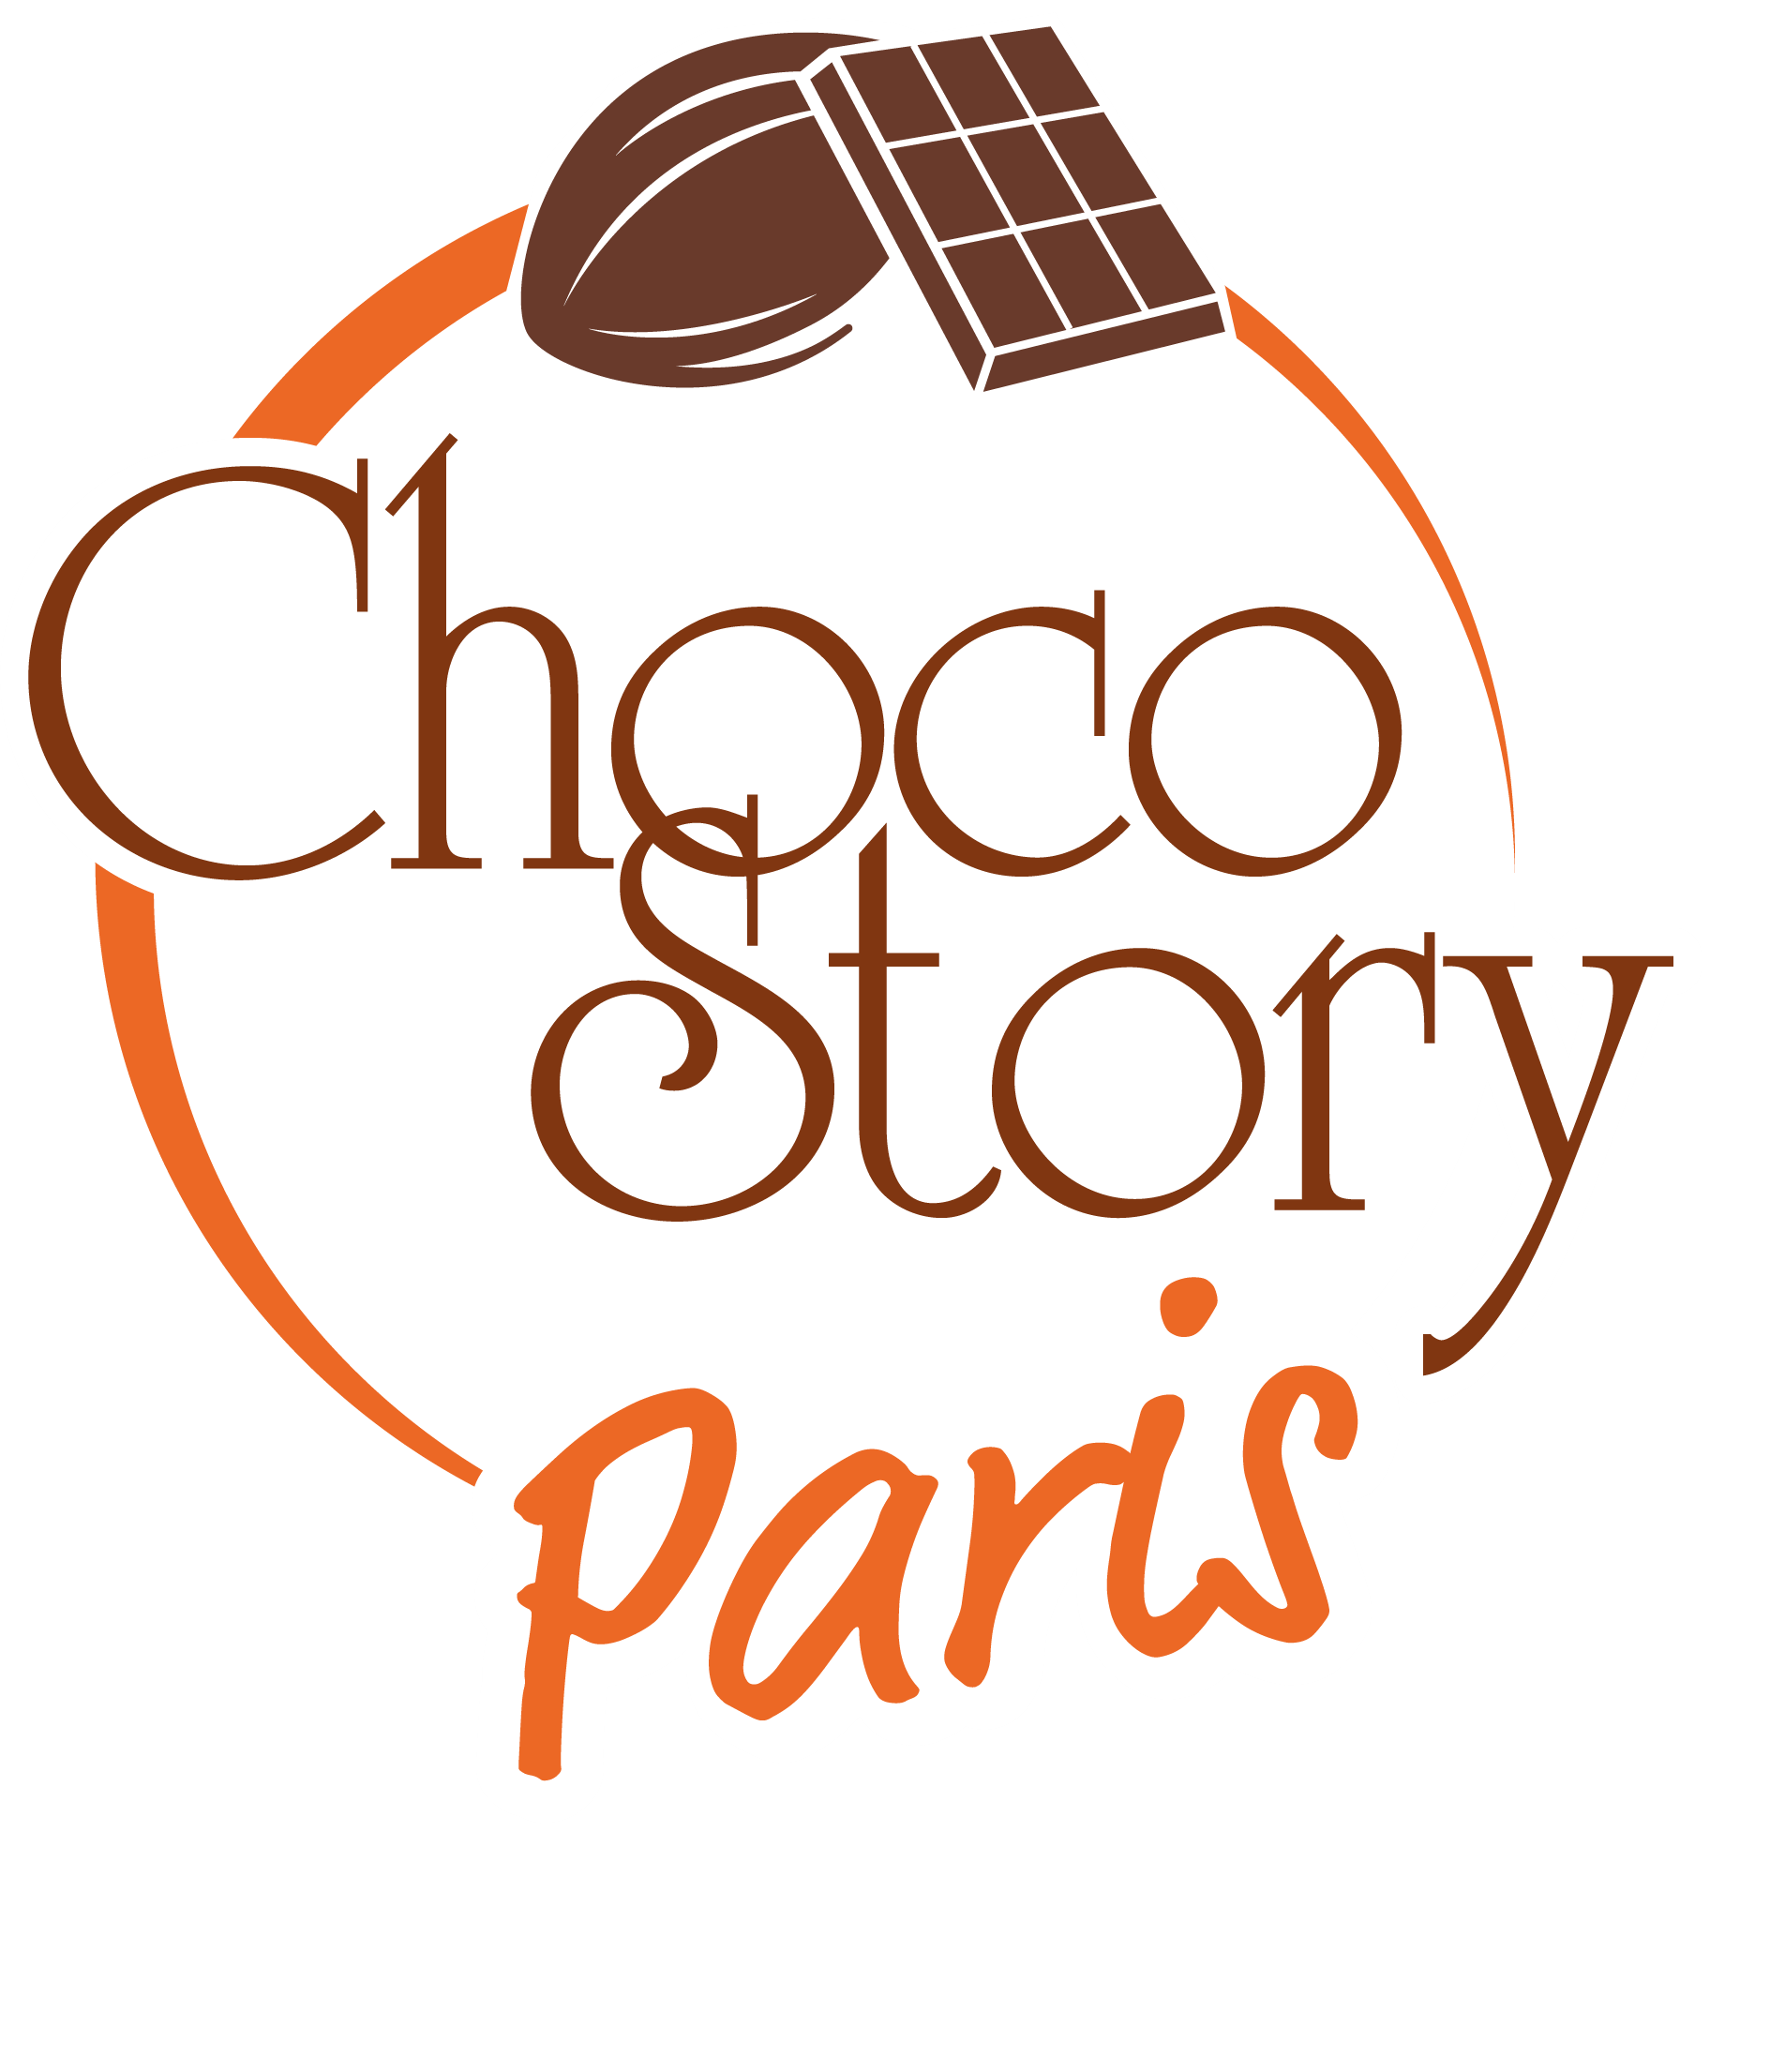 Choco-Story PARIS